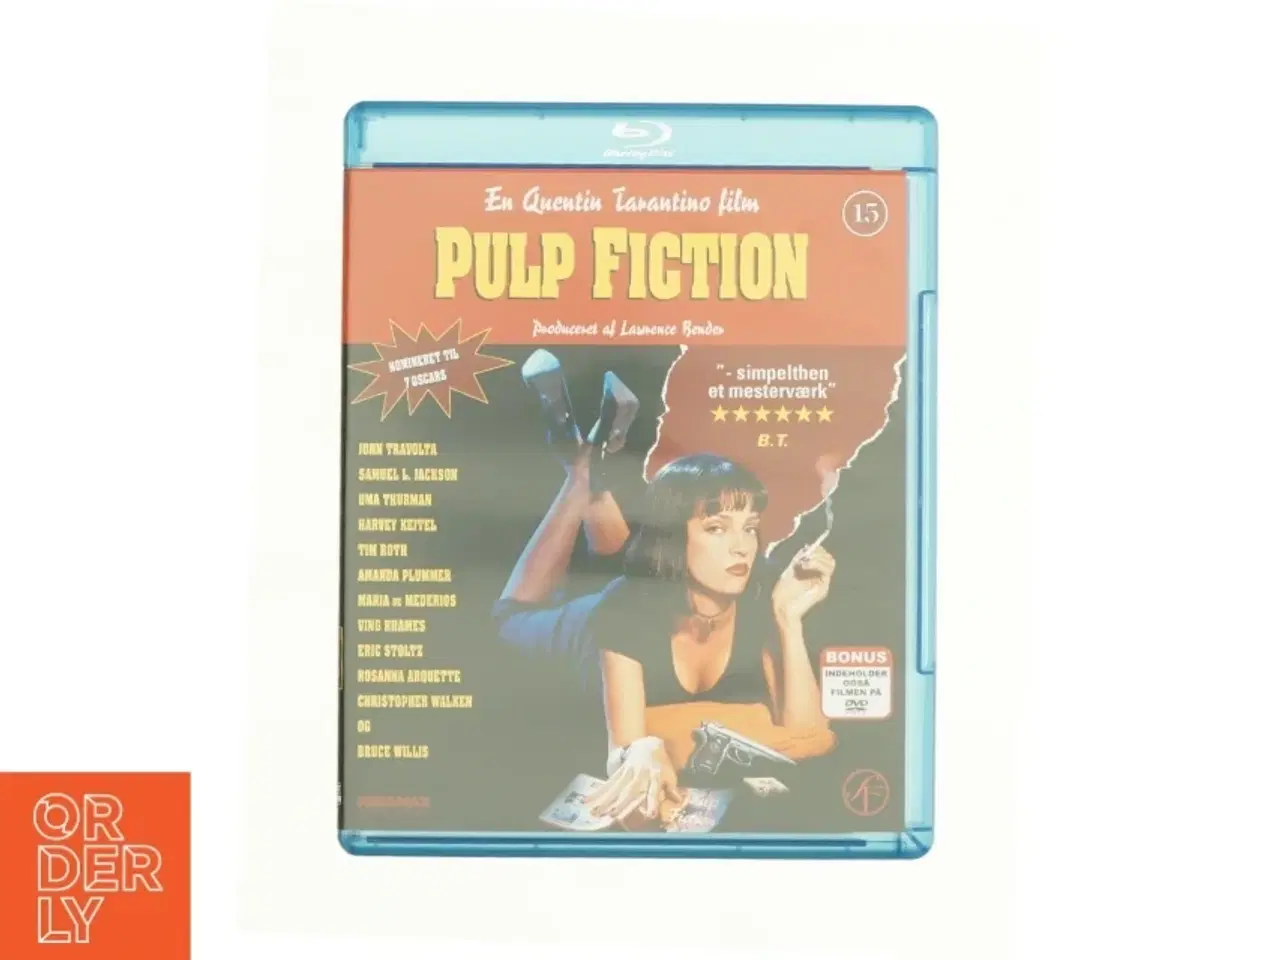 Billede 1 - Pulp Fiction fra DVD